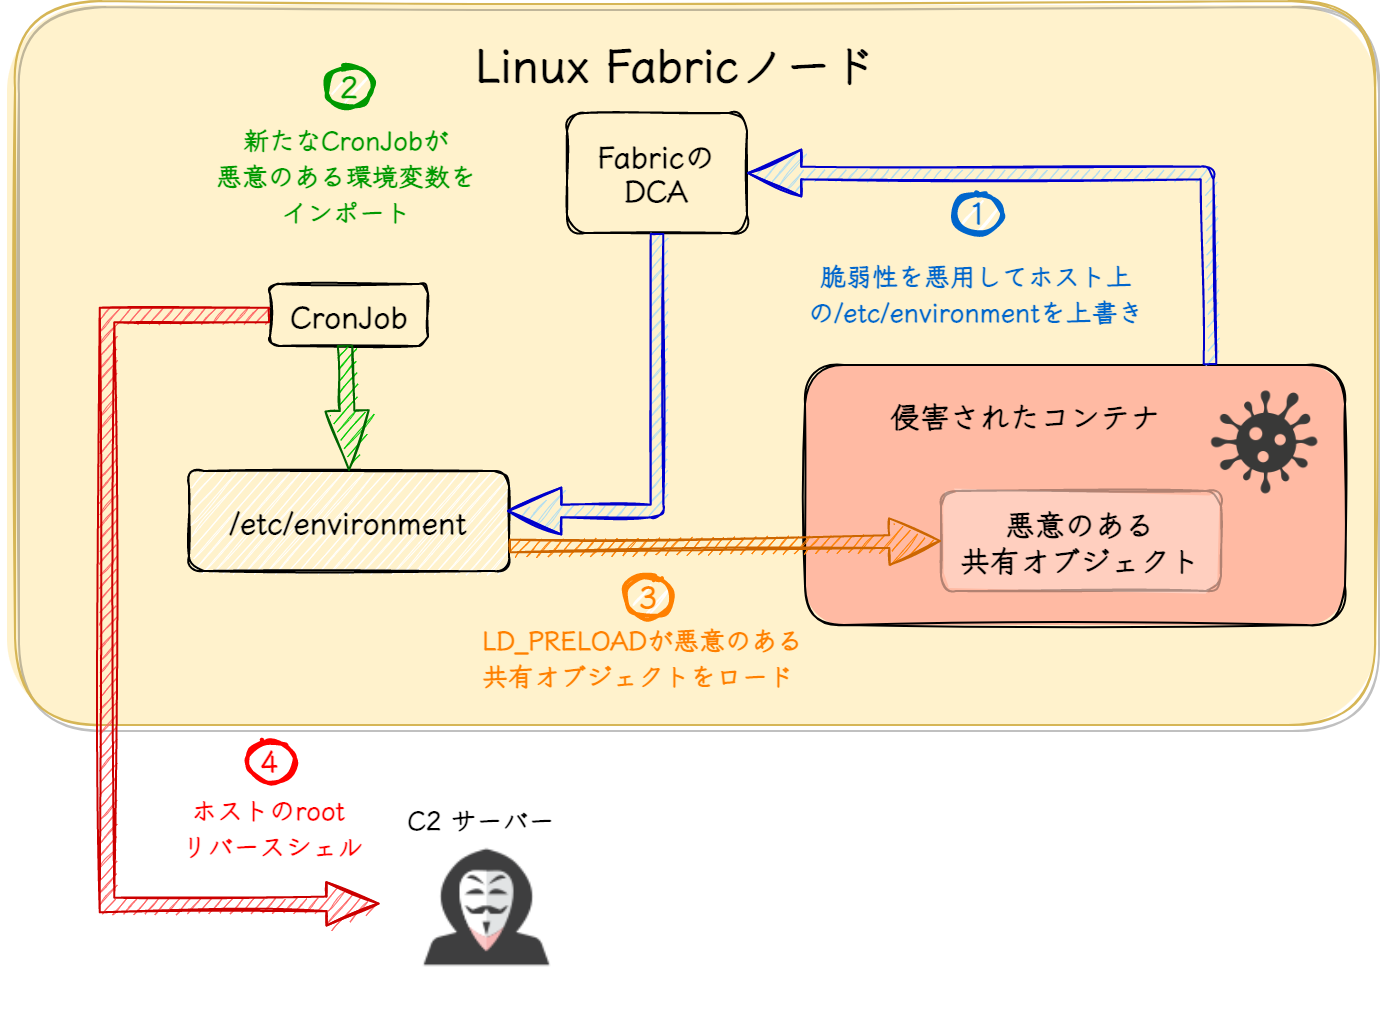 LinuxのService Fabricノードエクスプロイトの流れをステップバイステップで説明したもの。1) 脆弱性を利用してホスト上の/etc/environmentを上書き 2) 新しいcronjobが悪意のある環境変数をインポート、3) LD_PRELOADが悪意のある共有オブジェクトをロード 4) ホストのroot権限のリバースシェル